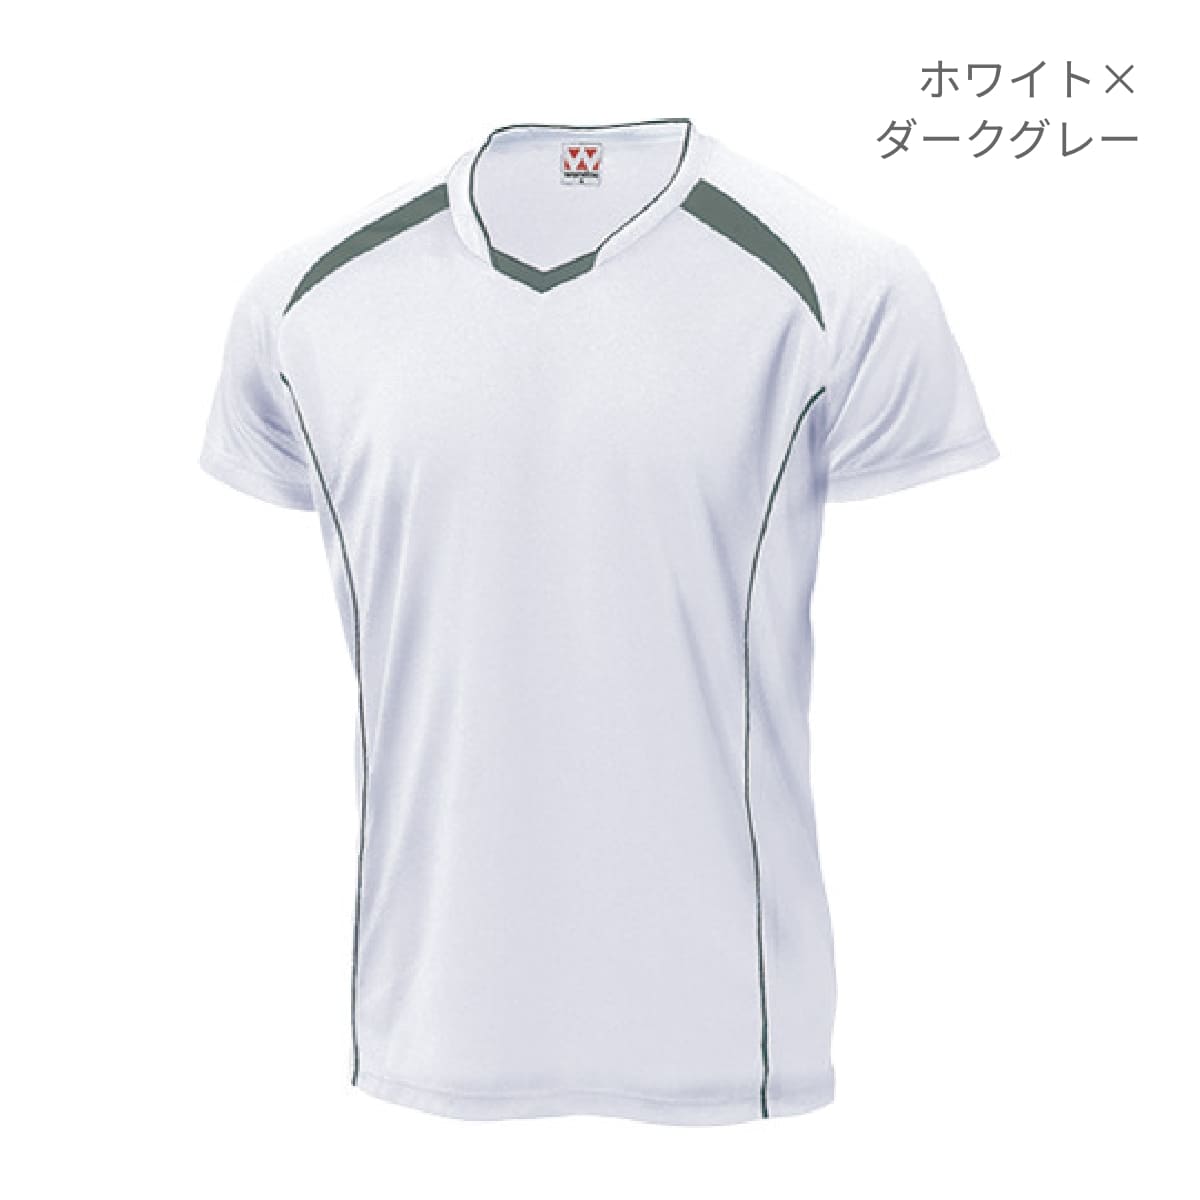 【送料無料】バレーボールシャツ | ユニフォーム | 1枚 | P1610 | ホワイト×ダークグレー